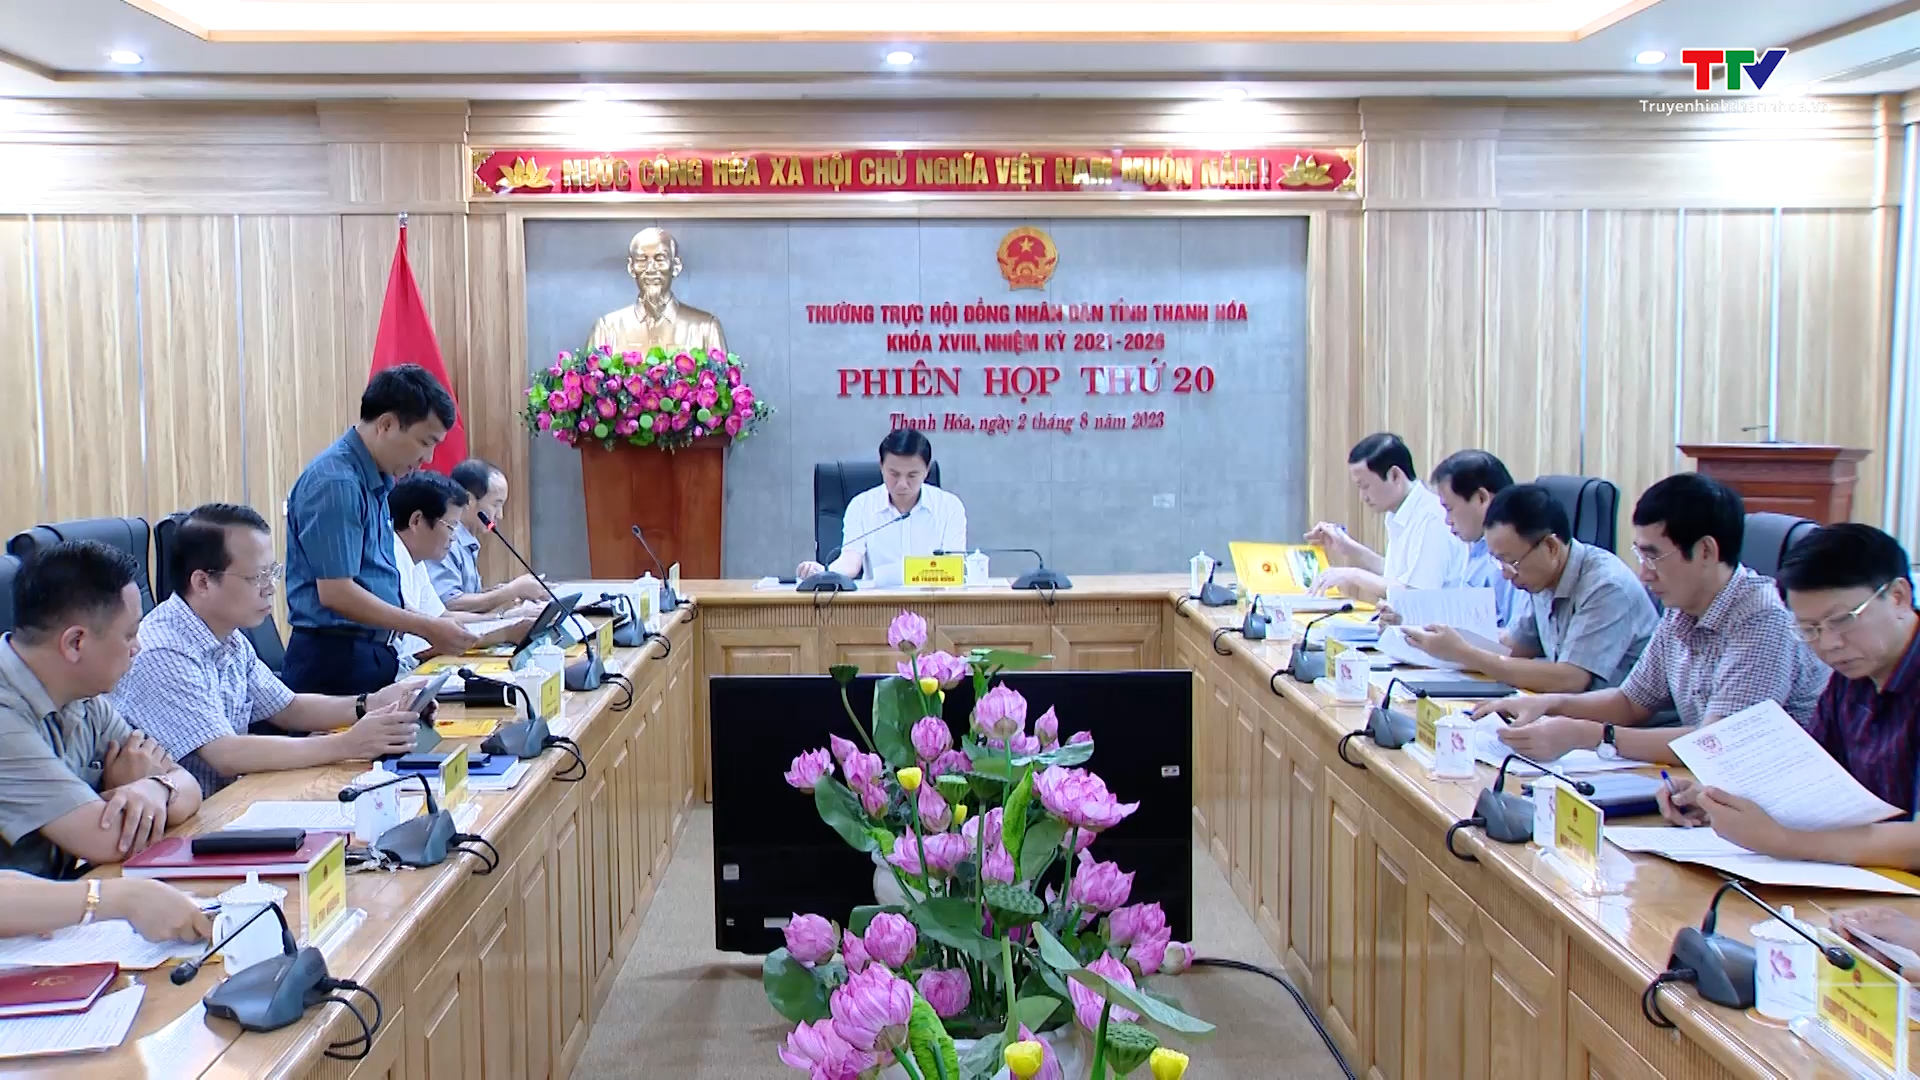 Phiên họp lần thứ 20 Thường trực Hội đồng Nhân dân tỉnh Thanh Hoá - Ảnh 2.